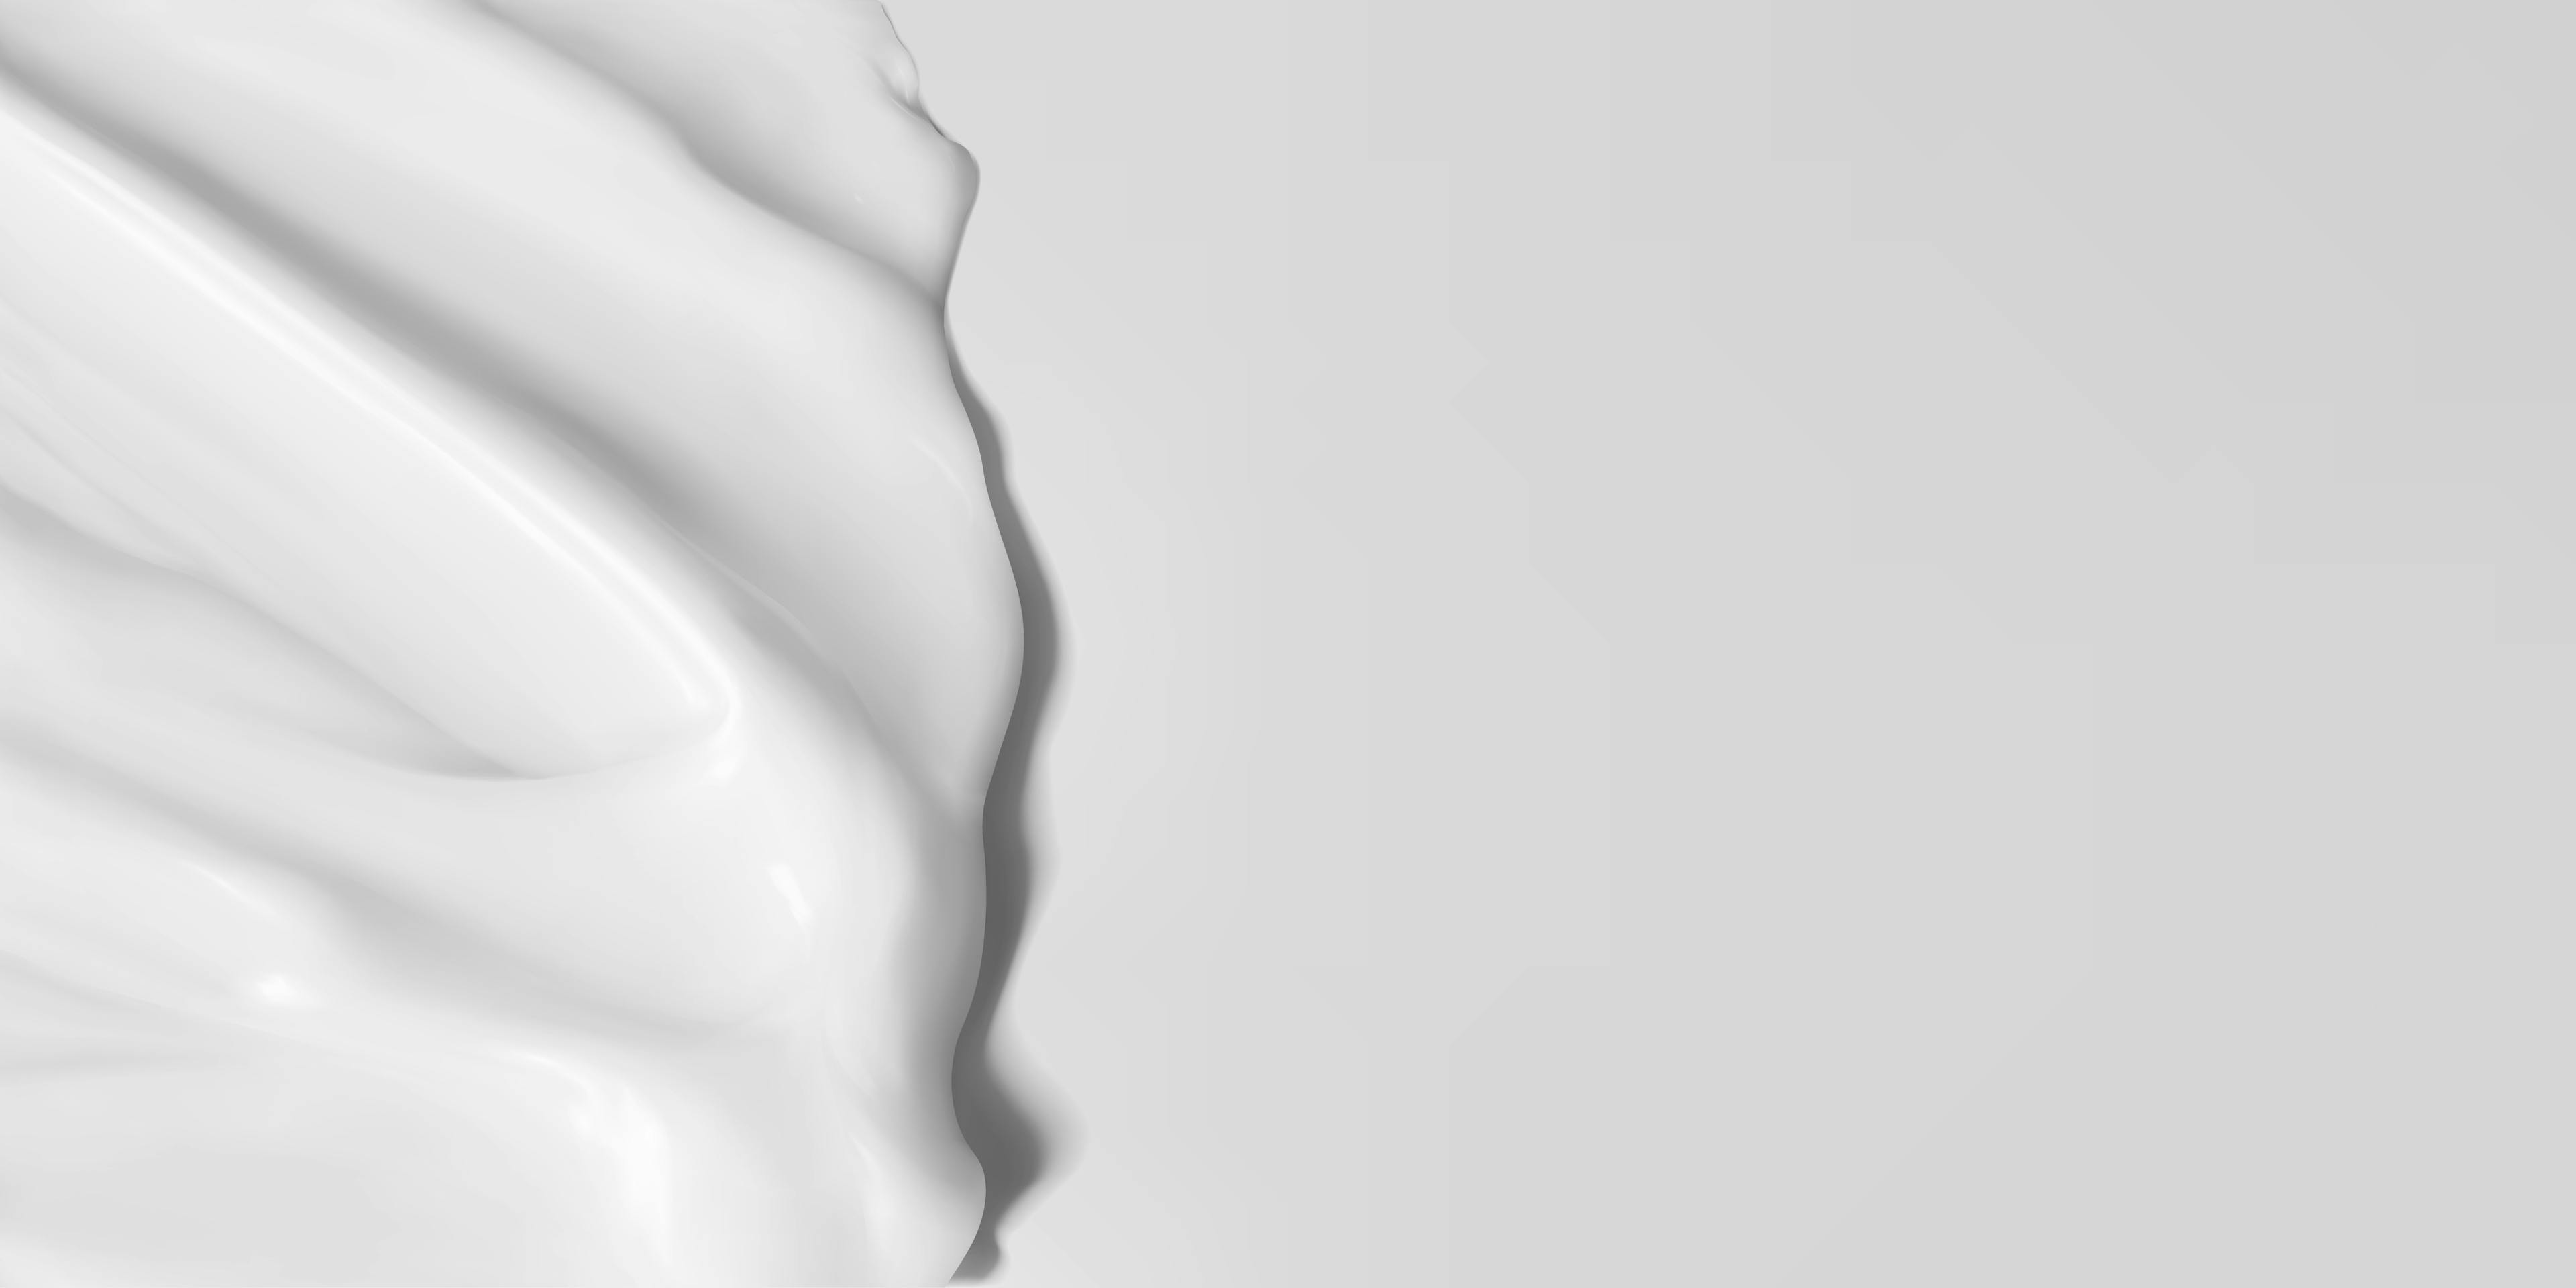 White cream on a white background